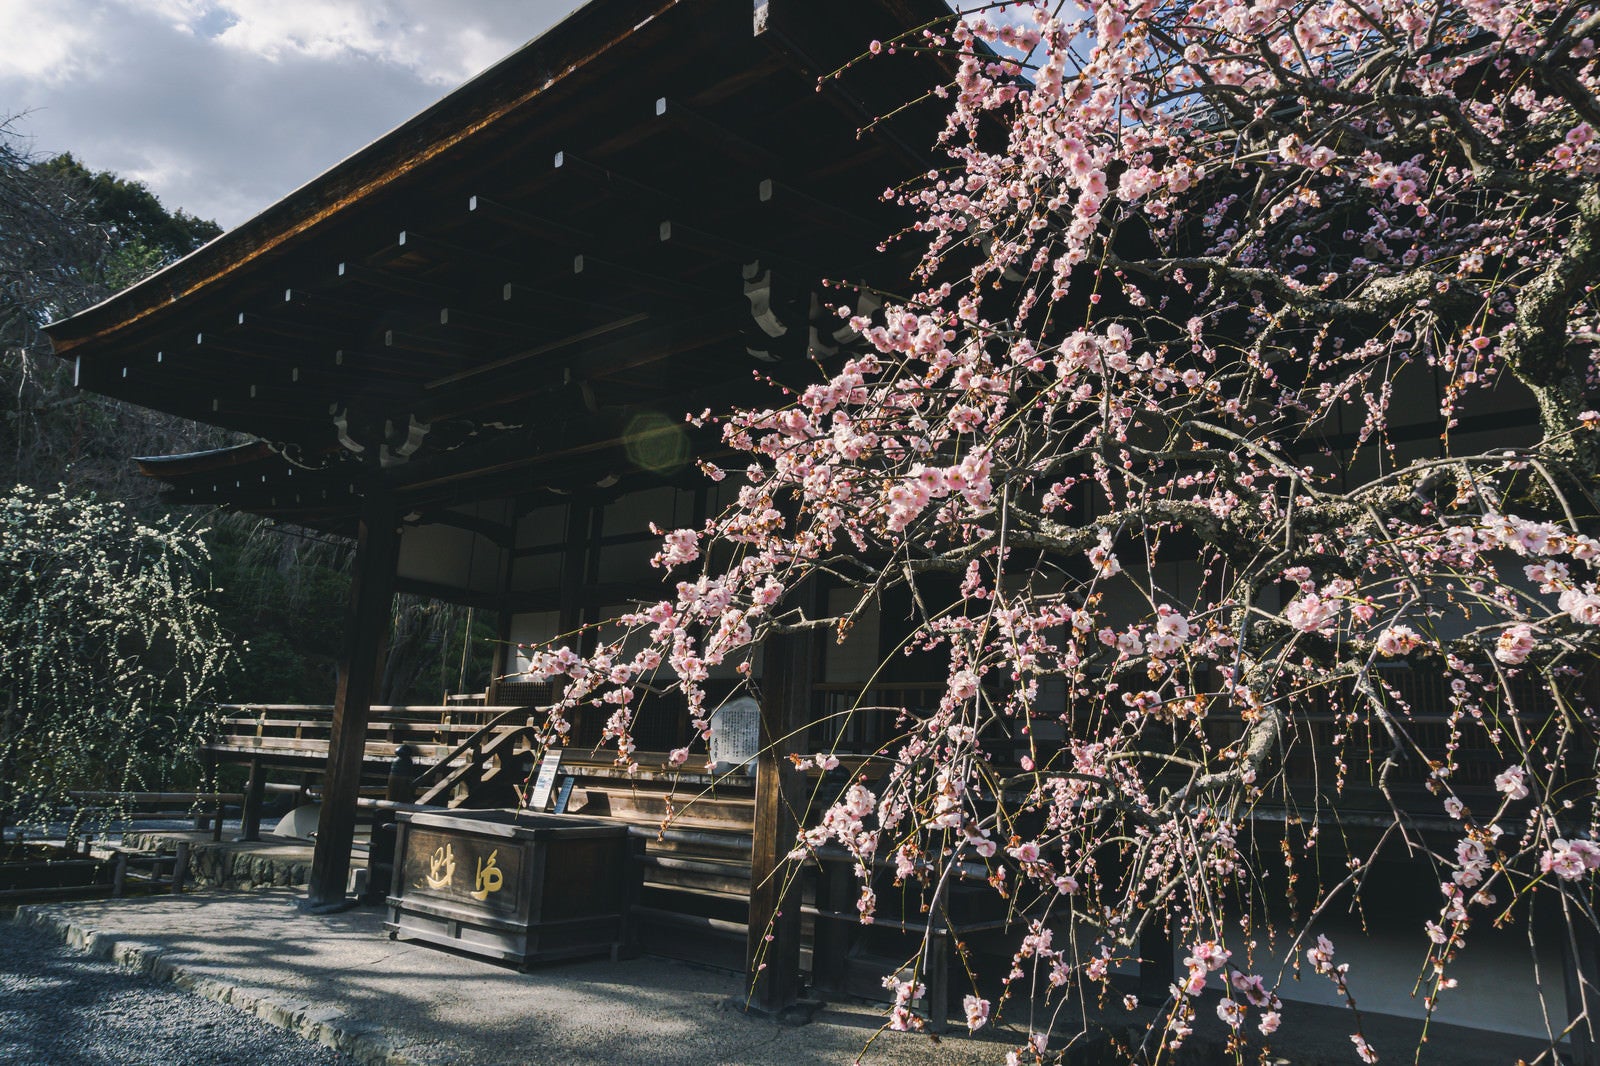 「京都 天龍寺多宝殿前の紅梅の枝垂れ梅と奥に見える白梅の枝垂れ梅」の写真